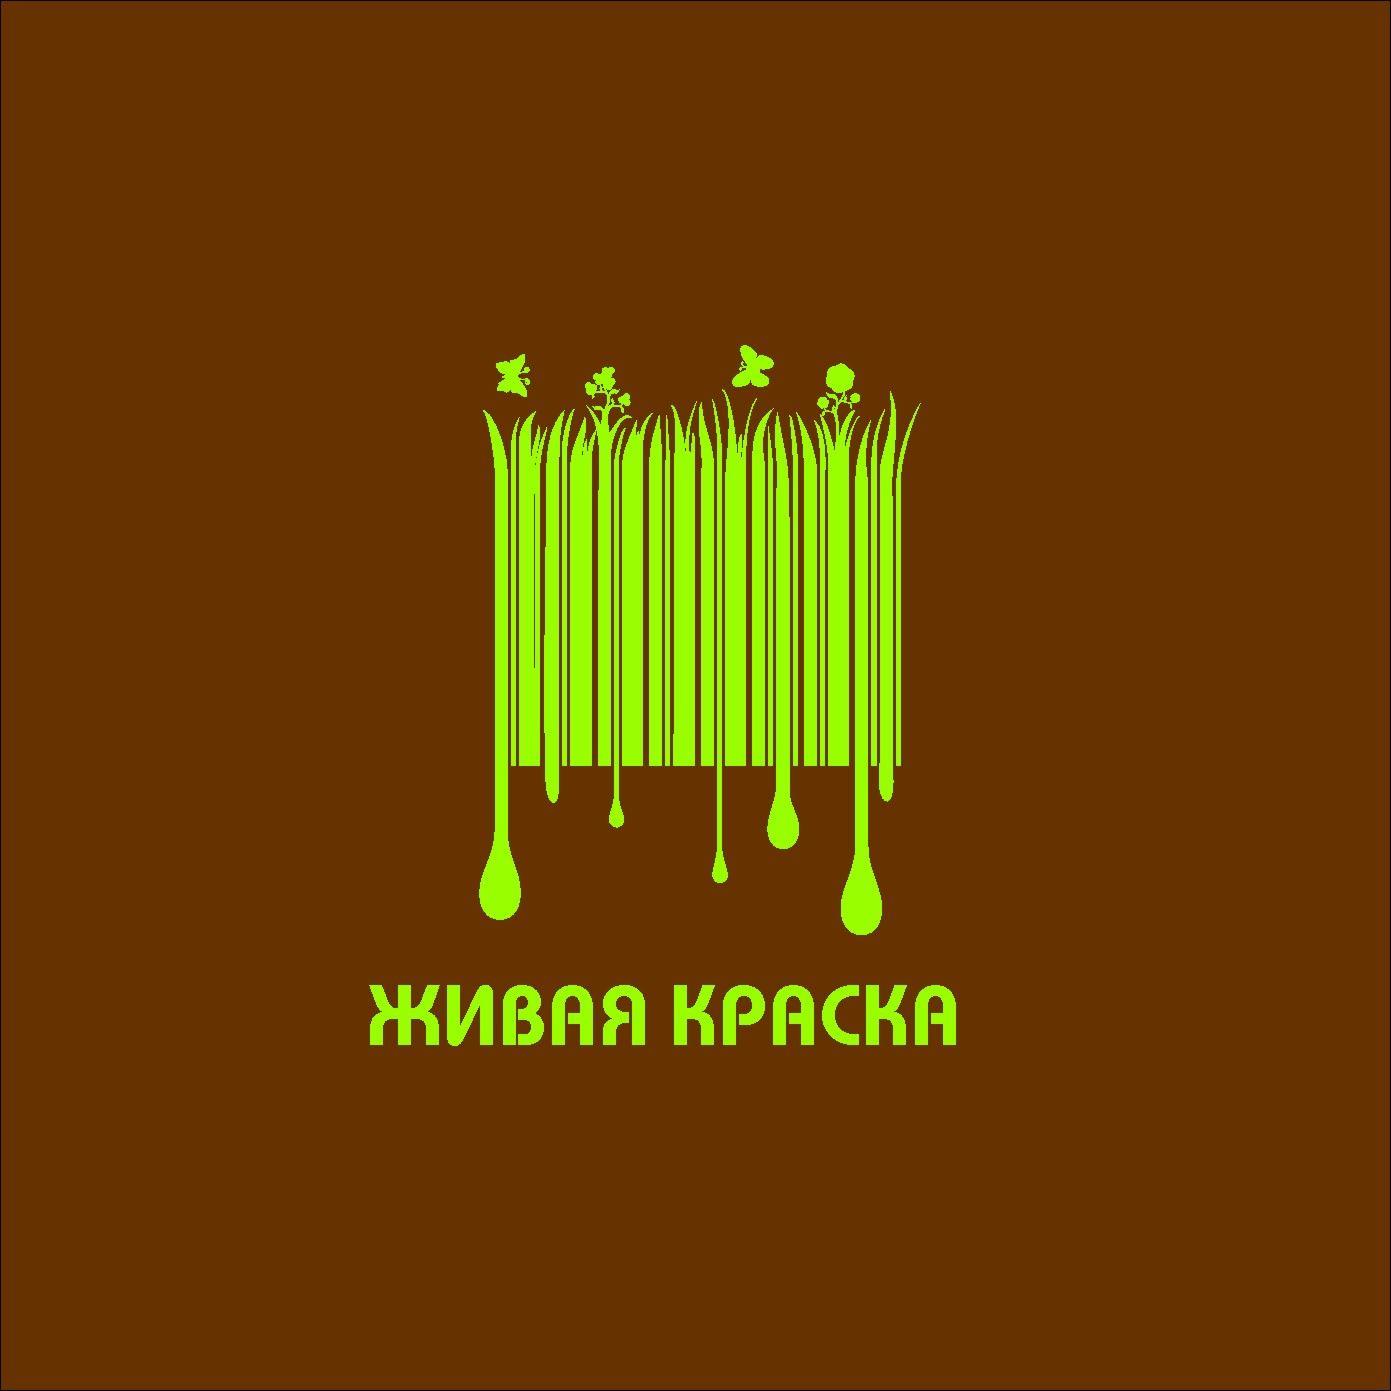 Лого и фирменный стиль для торговой марки - дизайнер radchuk-ruslan